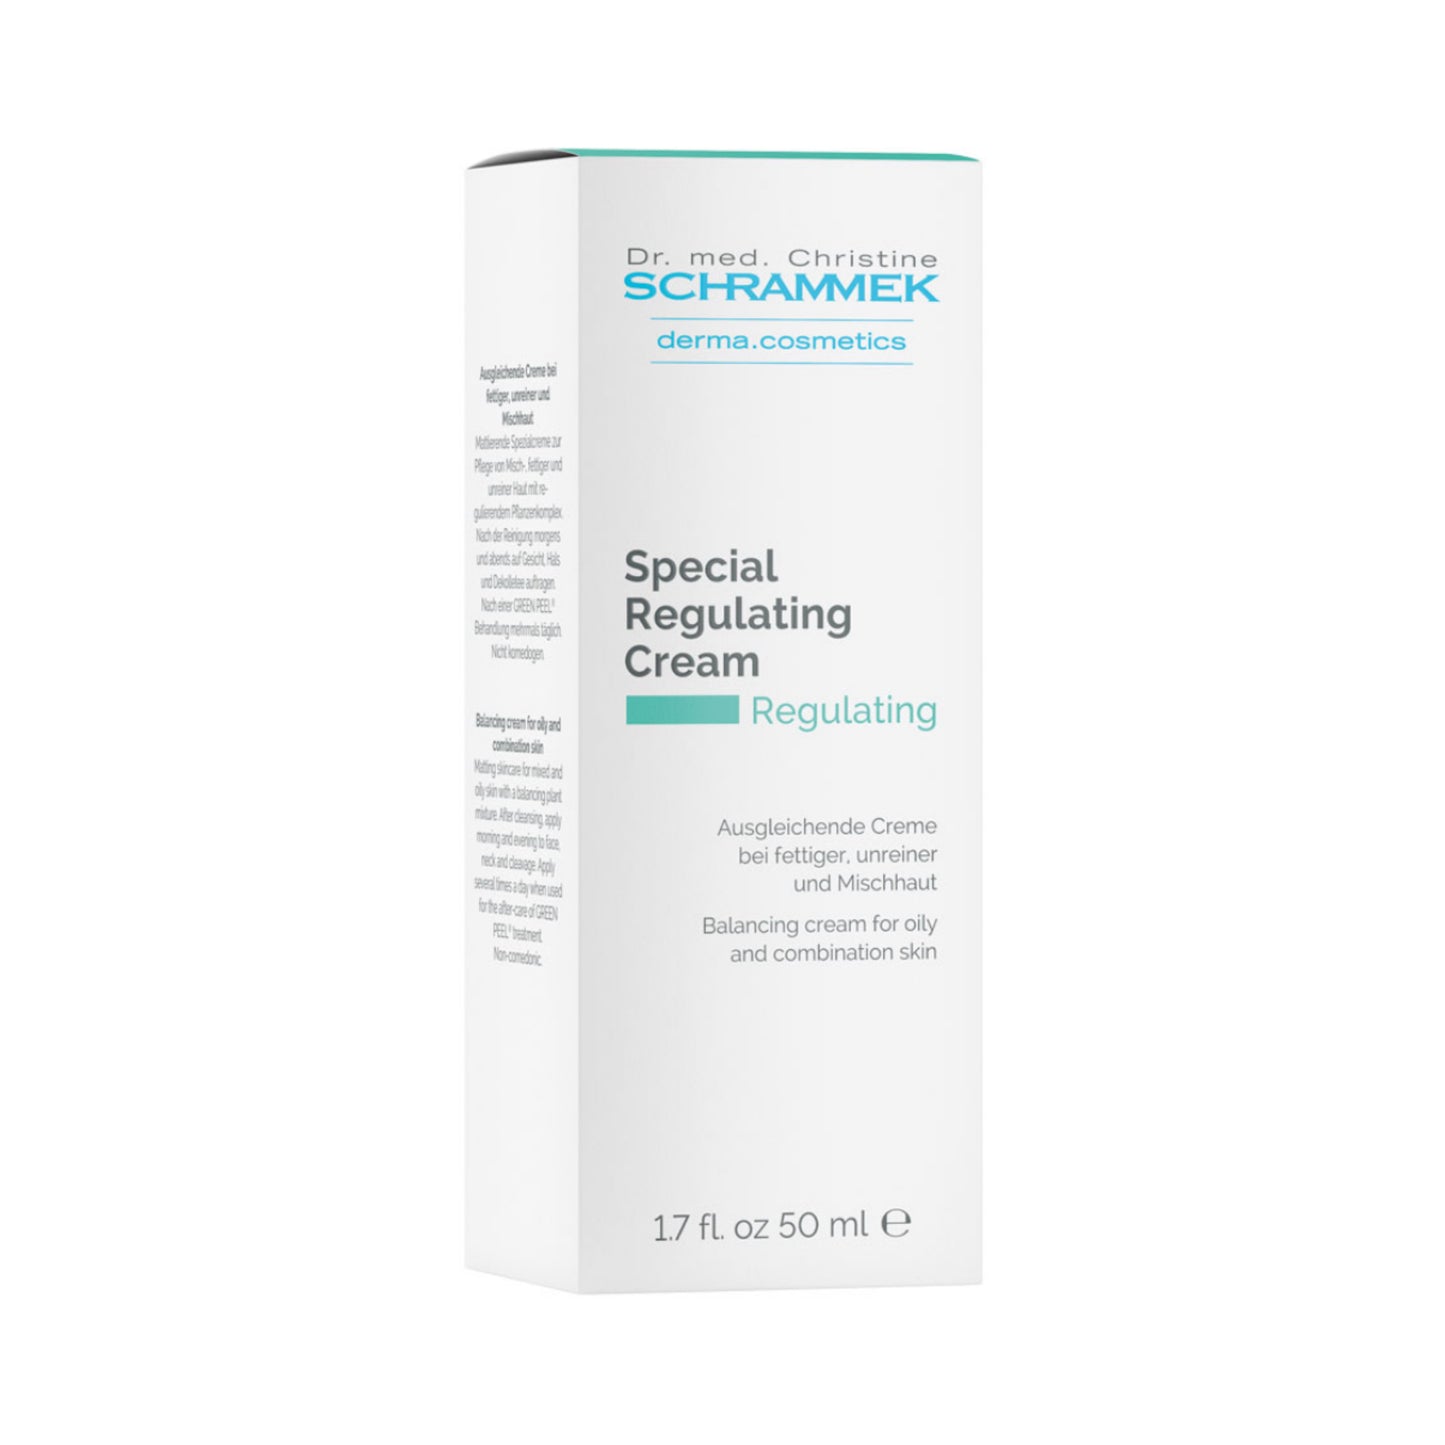 Dr Schrammek Special Regulating Cream